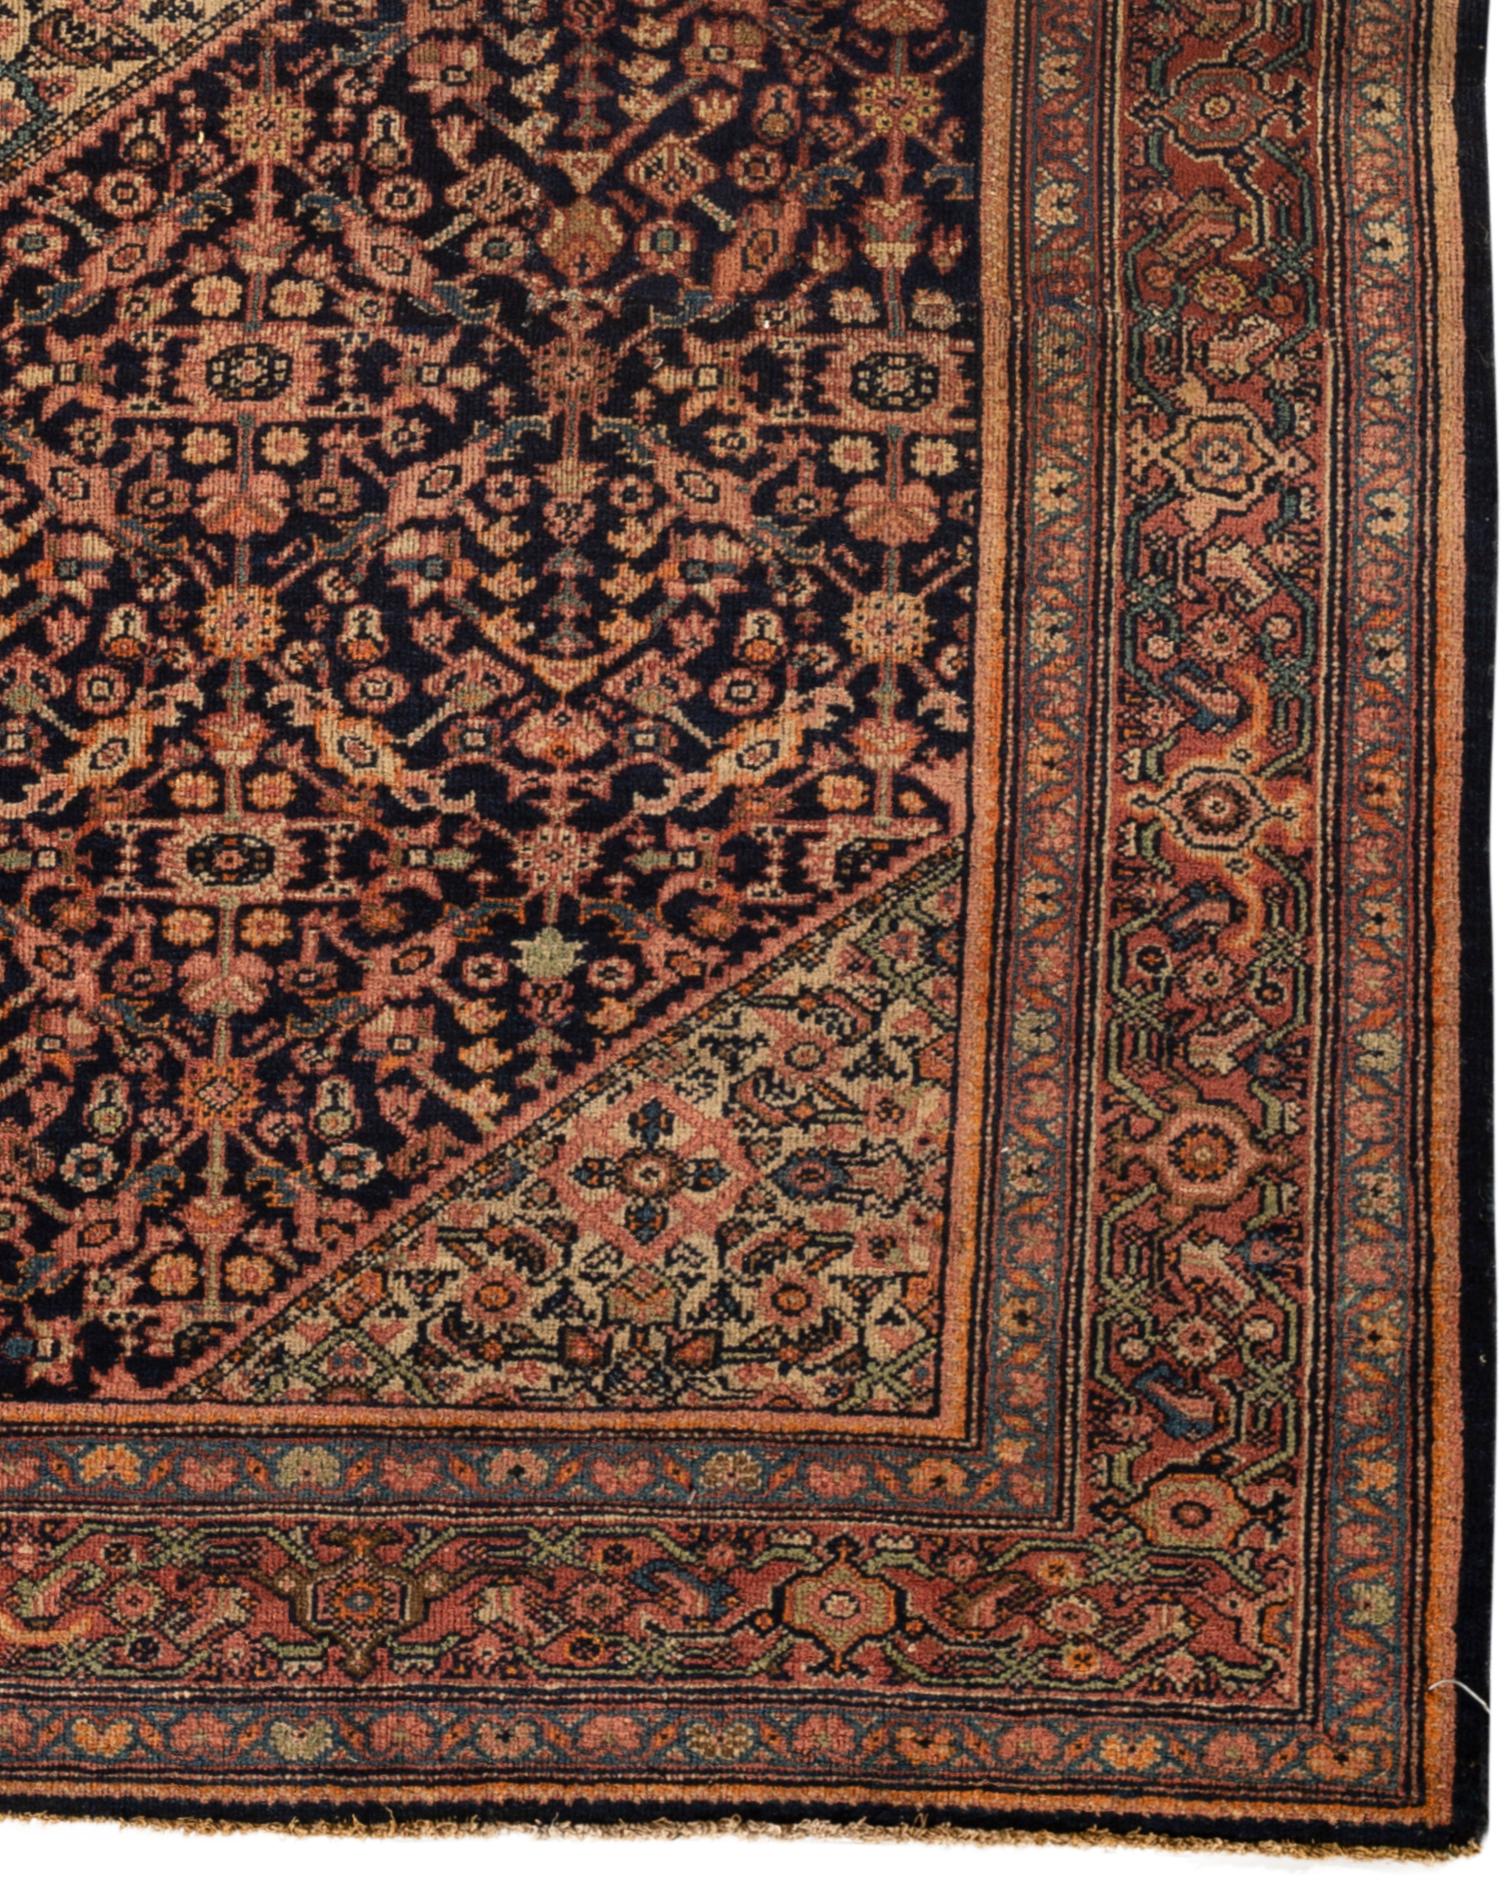 Hand-Woven Antique Persian Farahan Sarouk Rug Circa 1900. For Sale